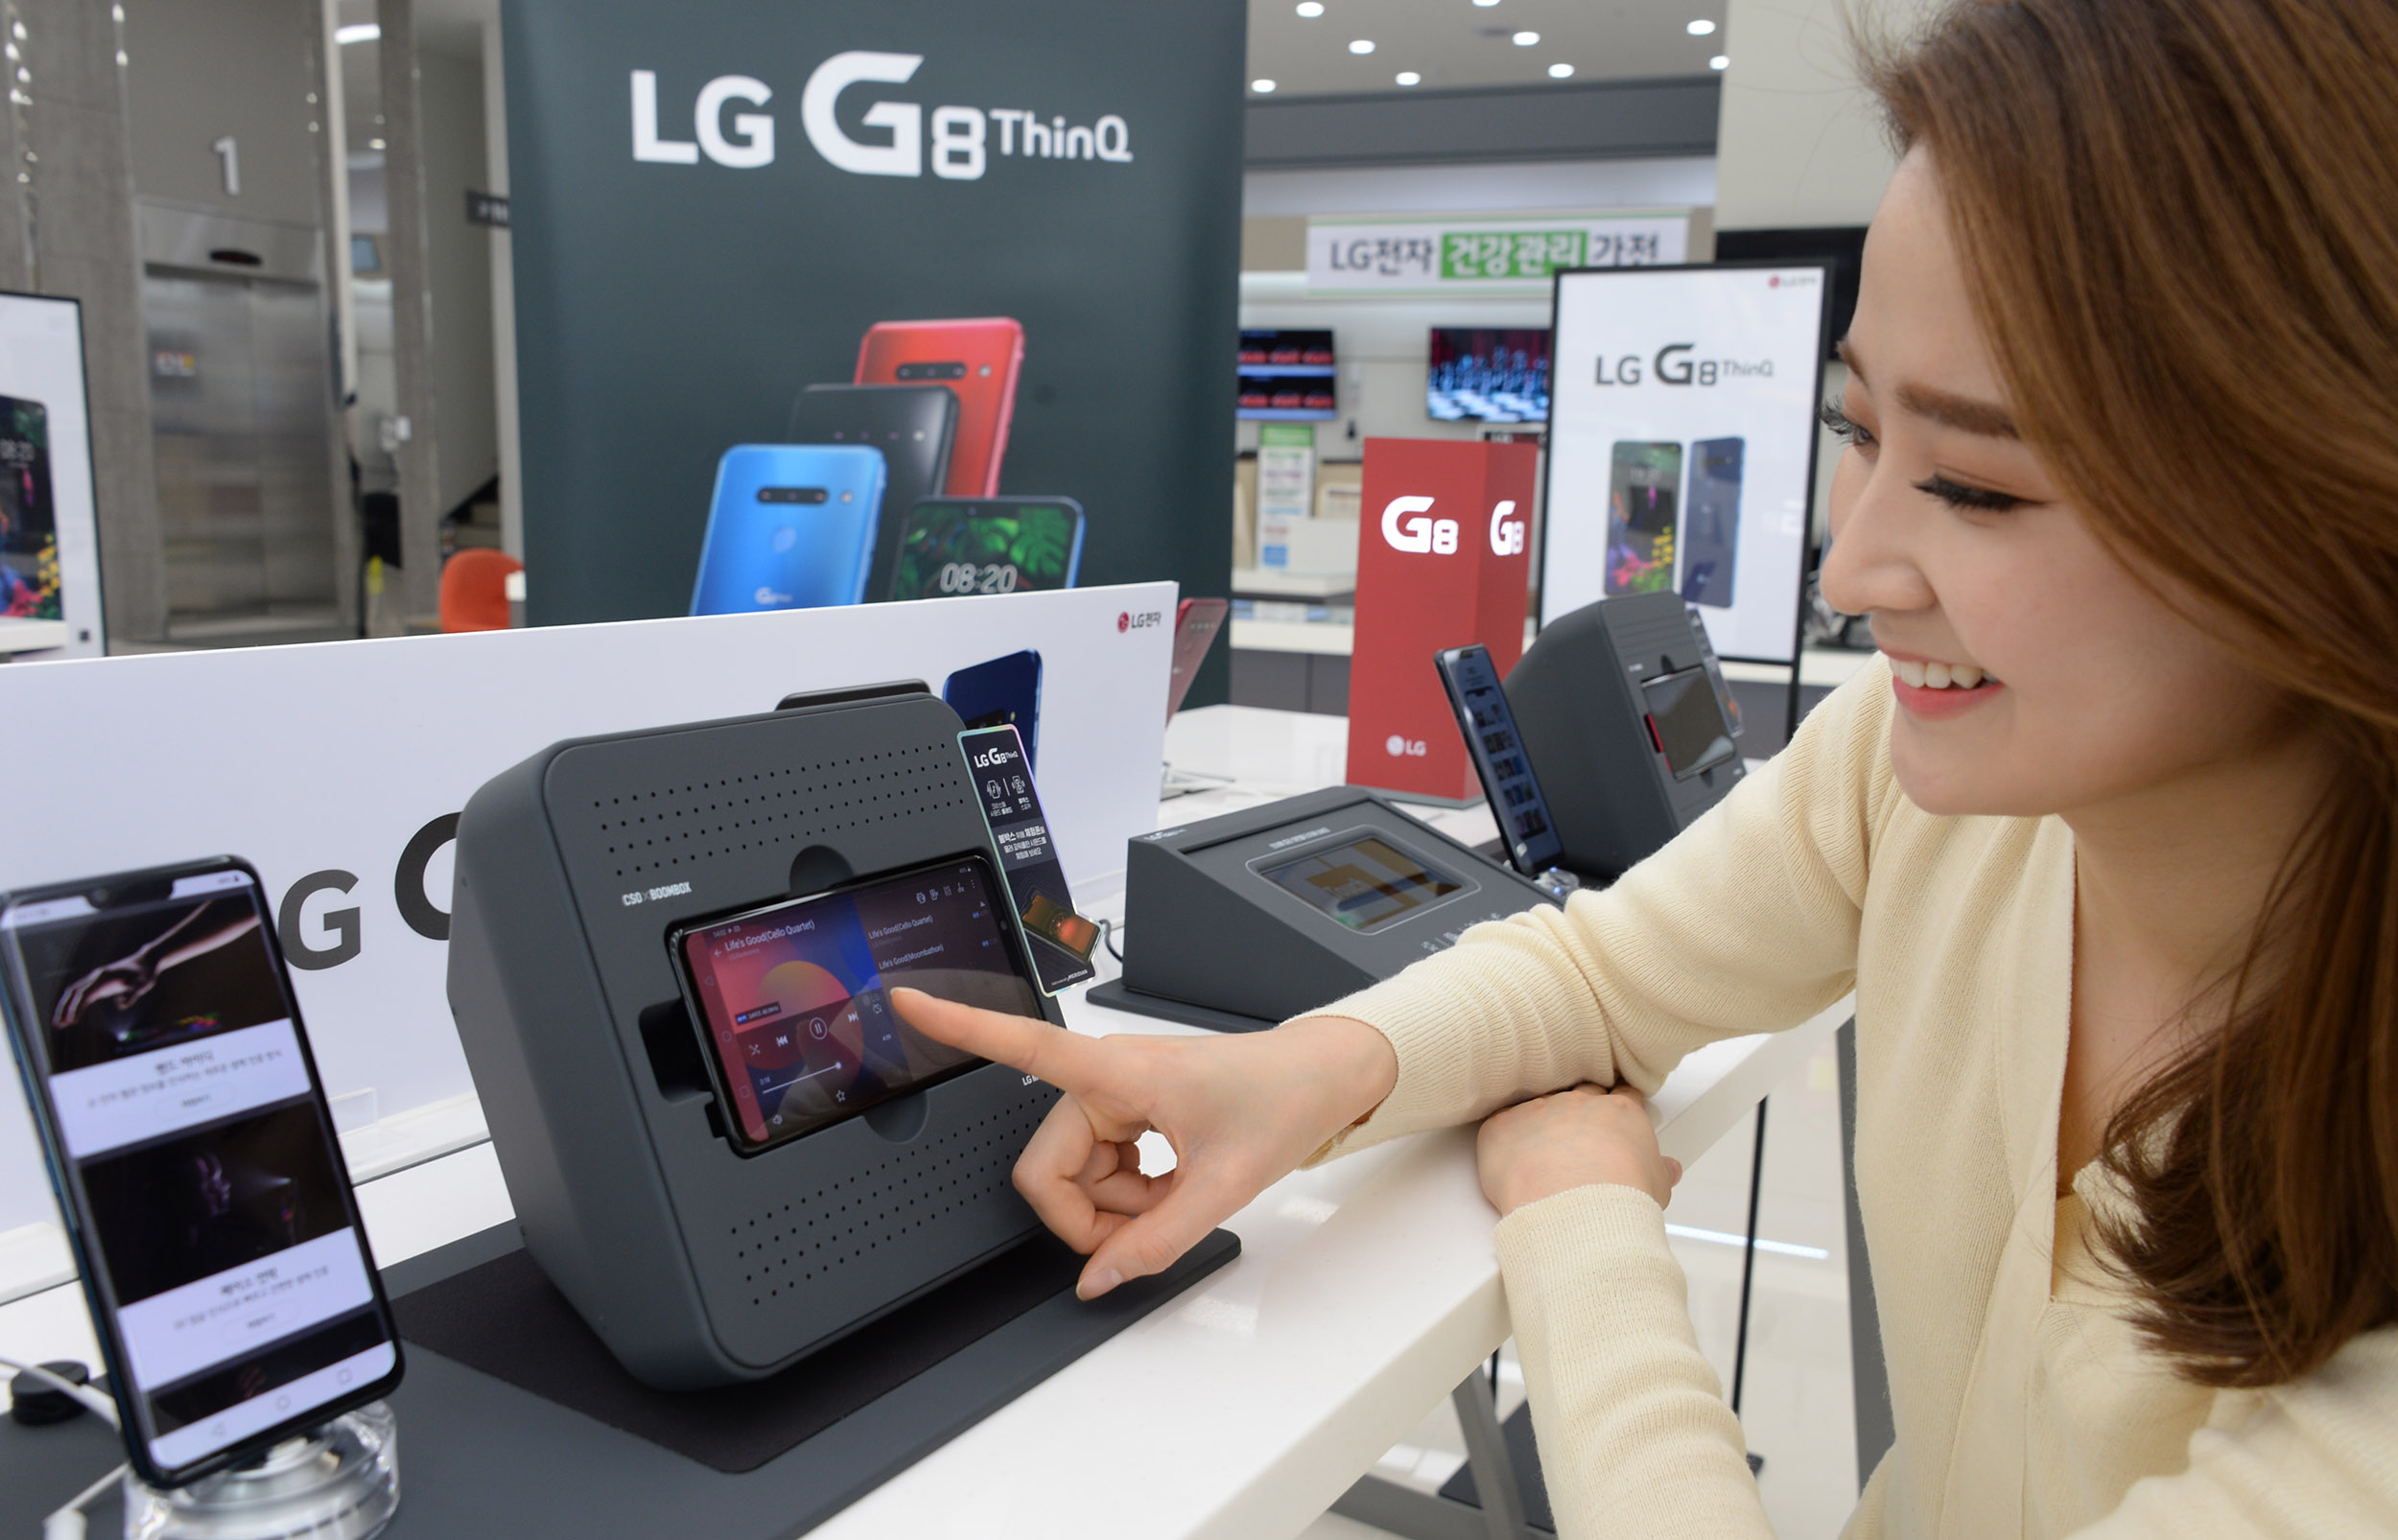 7일, 모델이 LG 베스트샵 서울양평점에서 붐박스부스터에 거치된 LG G8 ThinQ의 스테레오 사운드를 체험해보고 있다. LG G8 ThinQ 후면은 카메라 모듈부 돌출을 아예 없앴고, 전면에는 수화부 리시버의 작은 흔적조차 없앤 매끈한 디자인을 자랑한다.